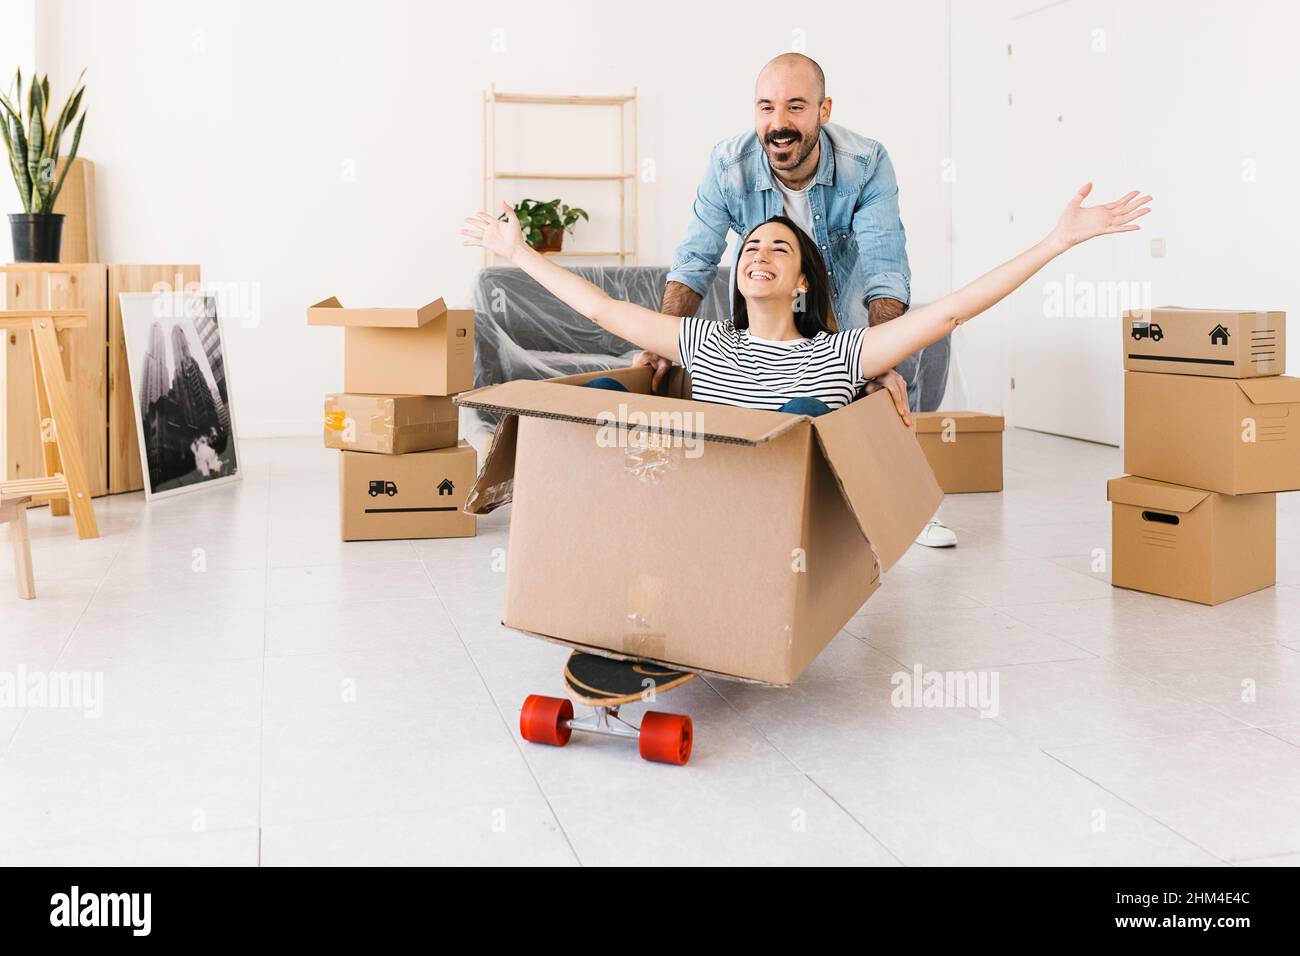 Glückliches Paar, das Spaß beim Auspacken am Umzugstag in einer neuen Wohnung hat Stockfoto